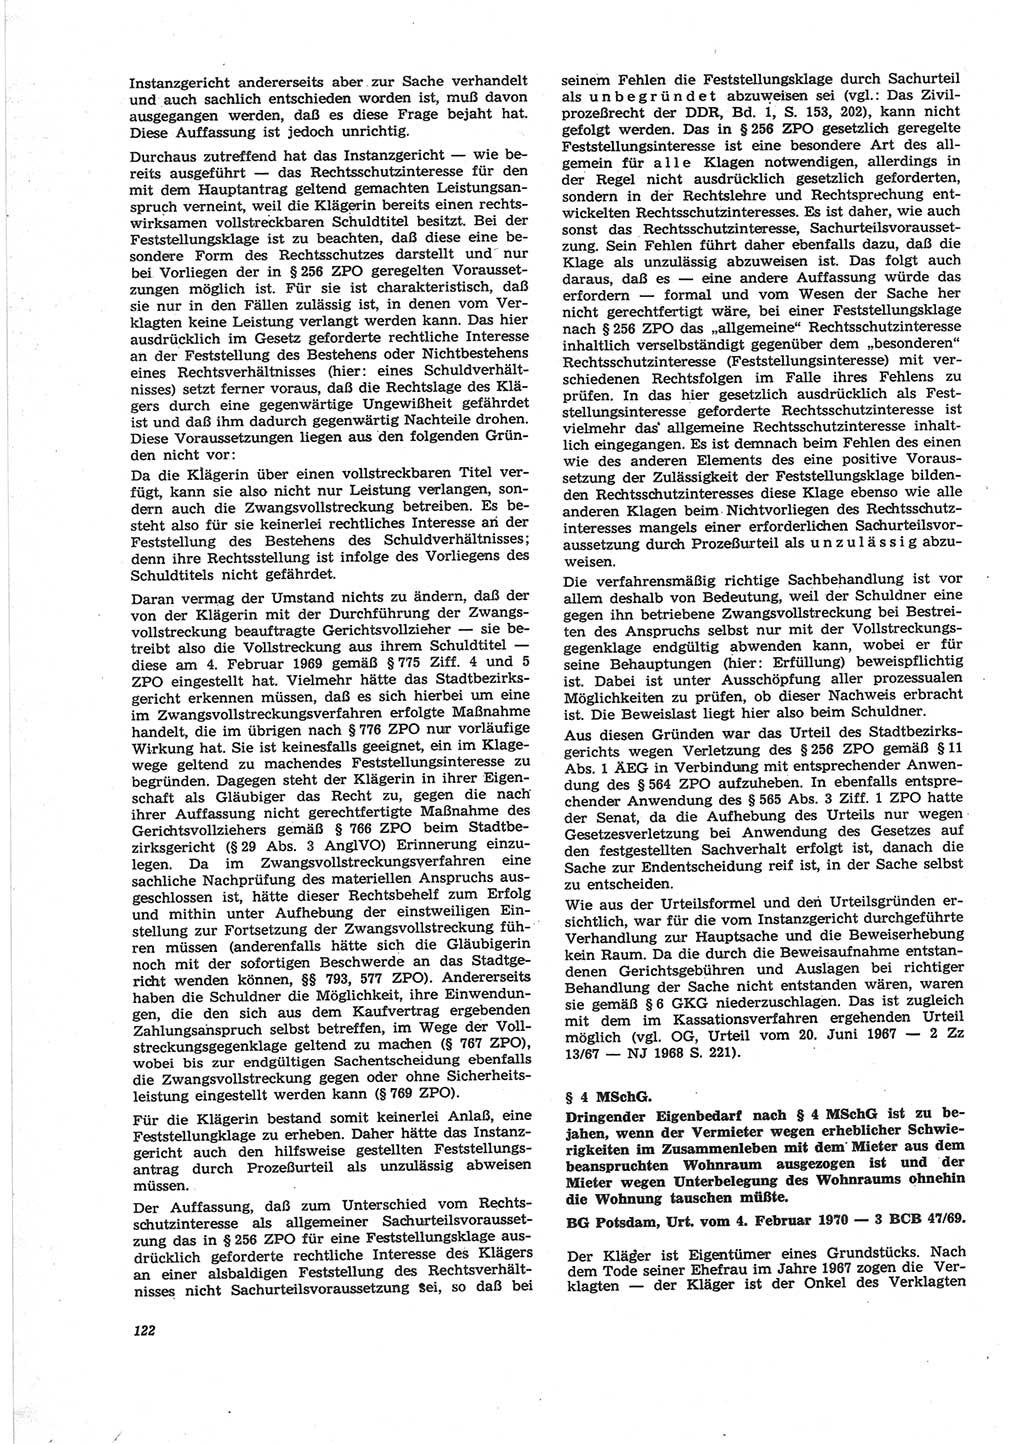 Neue Justiz (NJ), Zeitschrift für Recht und Rechtswissenschaft [Deutsche Demokratische Republik (DDR)], 25. Jahrgang 1971, Seite 122 (NJ DDR 1971, S. 122)